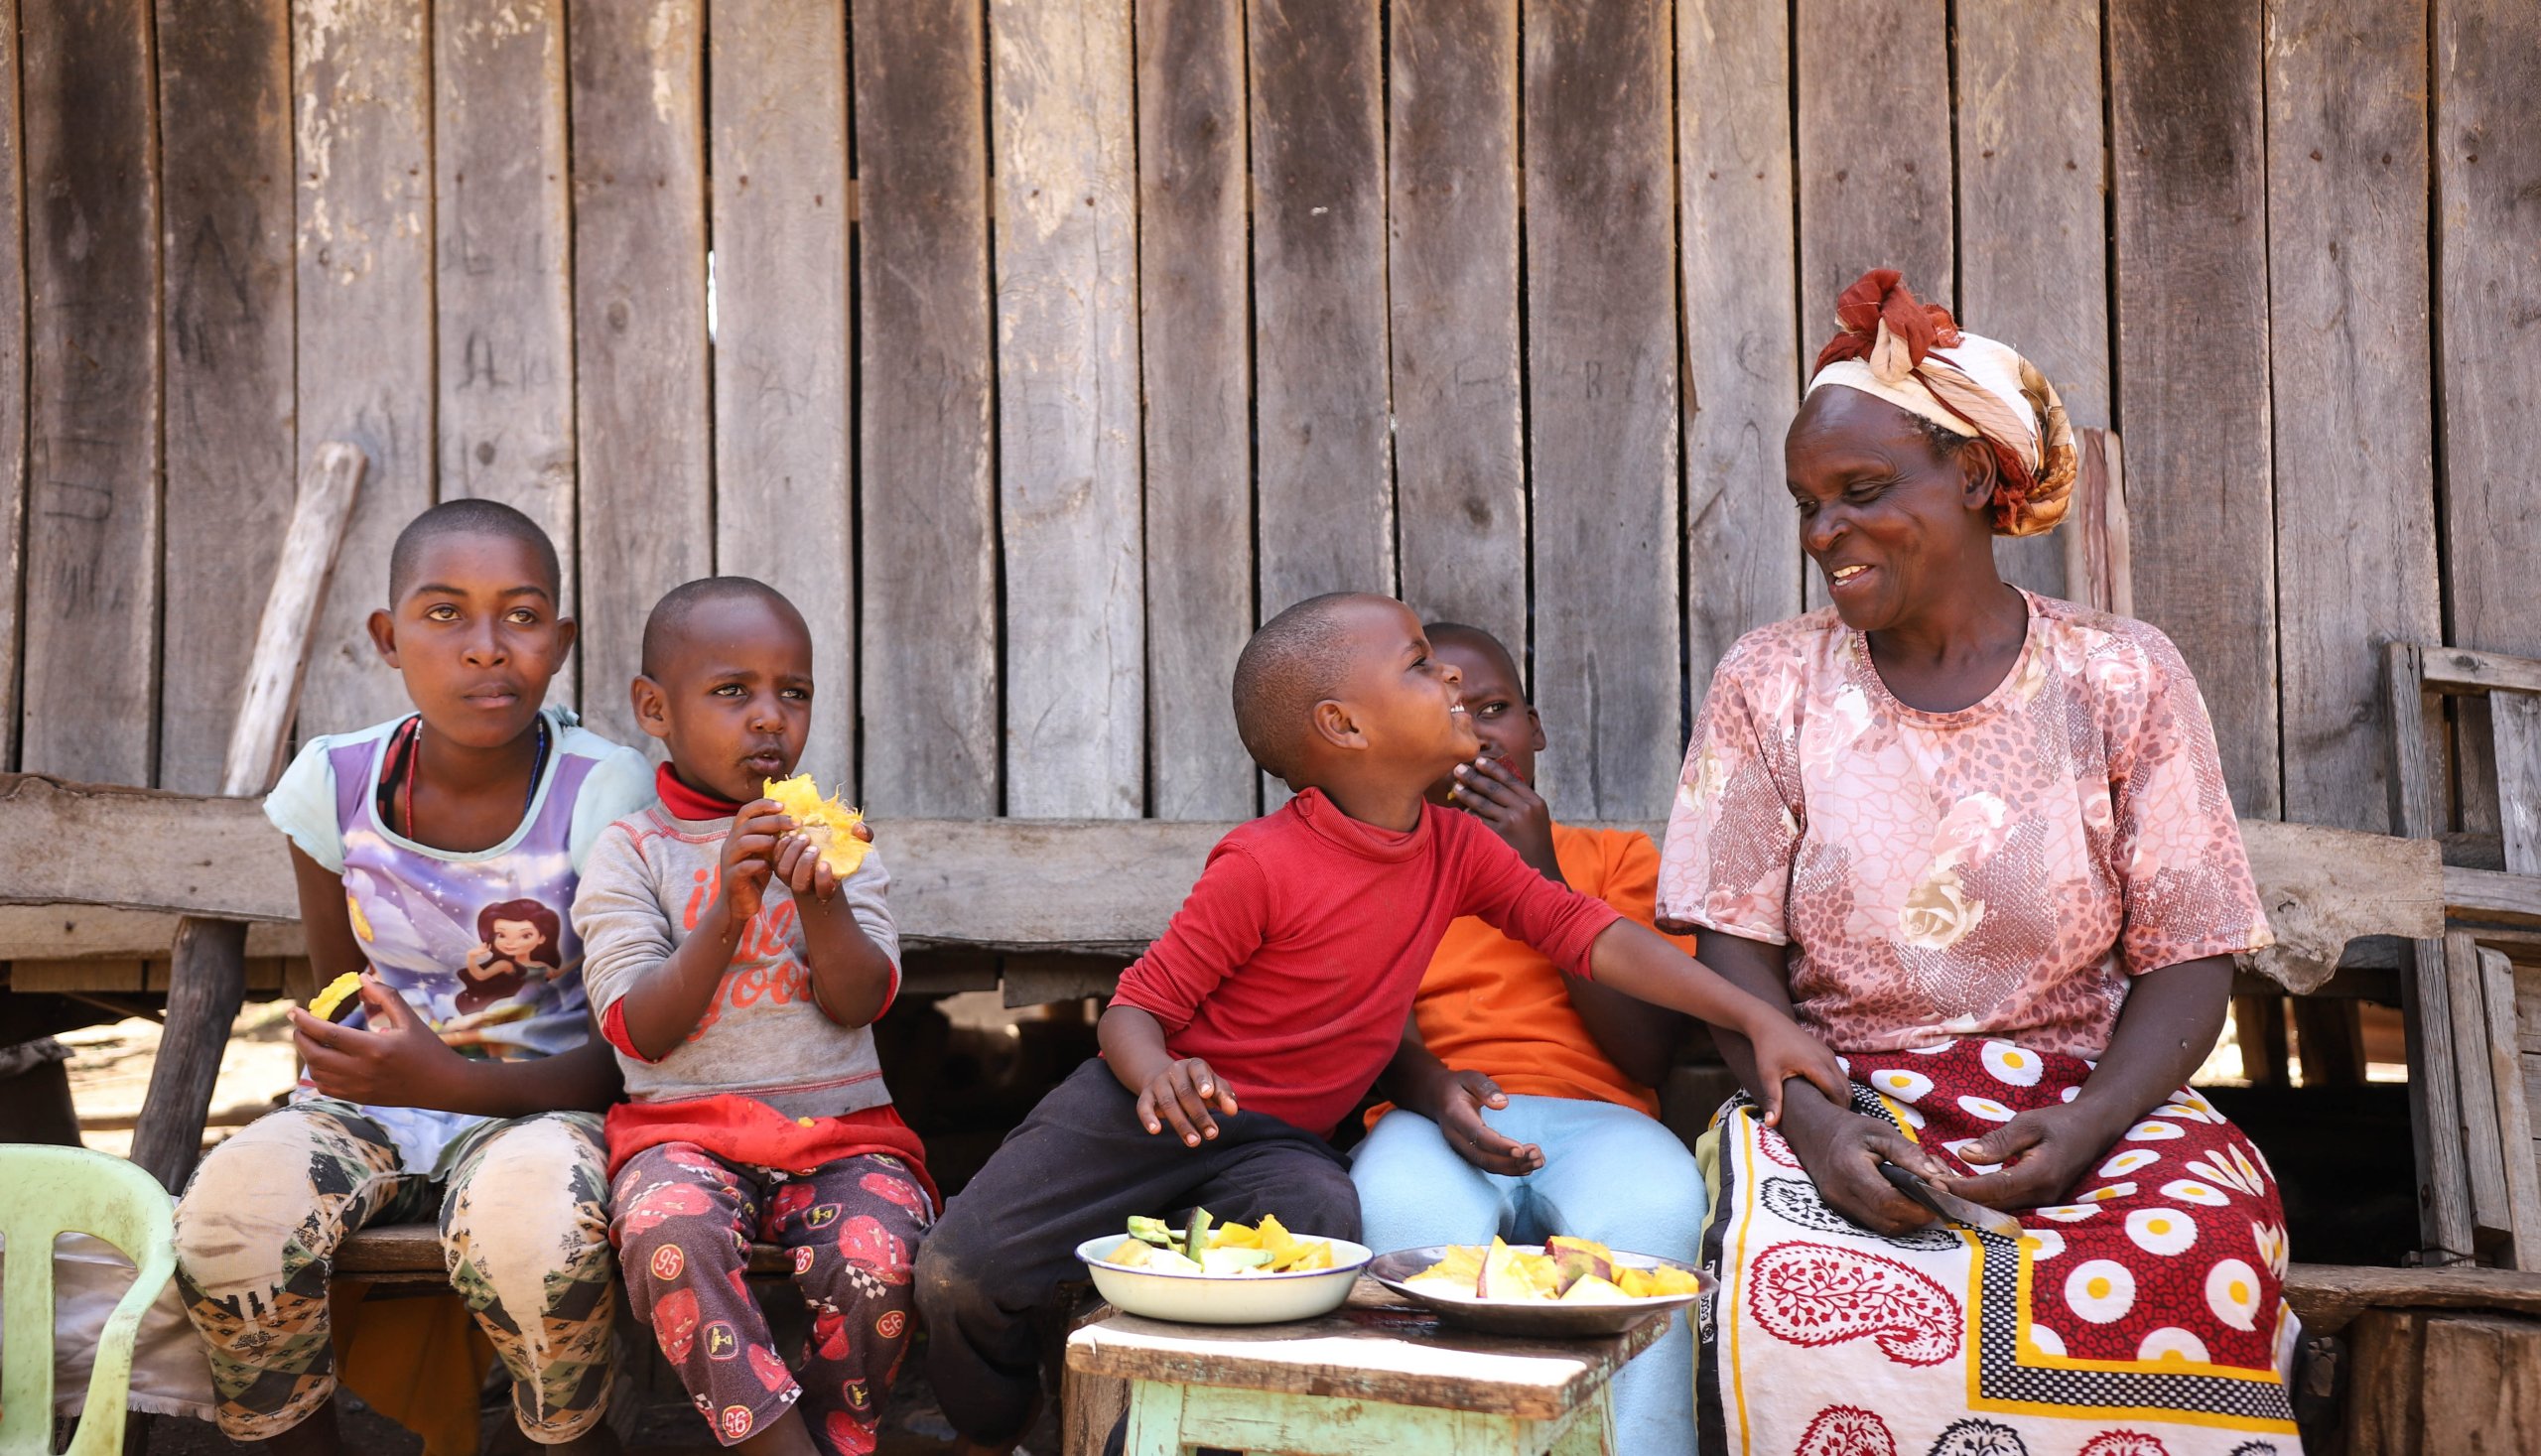 Die kenianische Bäuerin Faith Wanjiru sitzt mit ihren Enkeln auf der Bank. Gemeinsam geniessen sie frische Früchte.